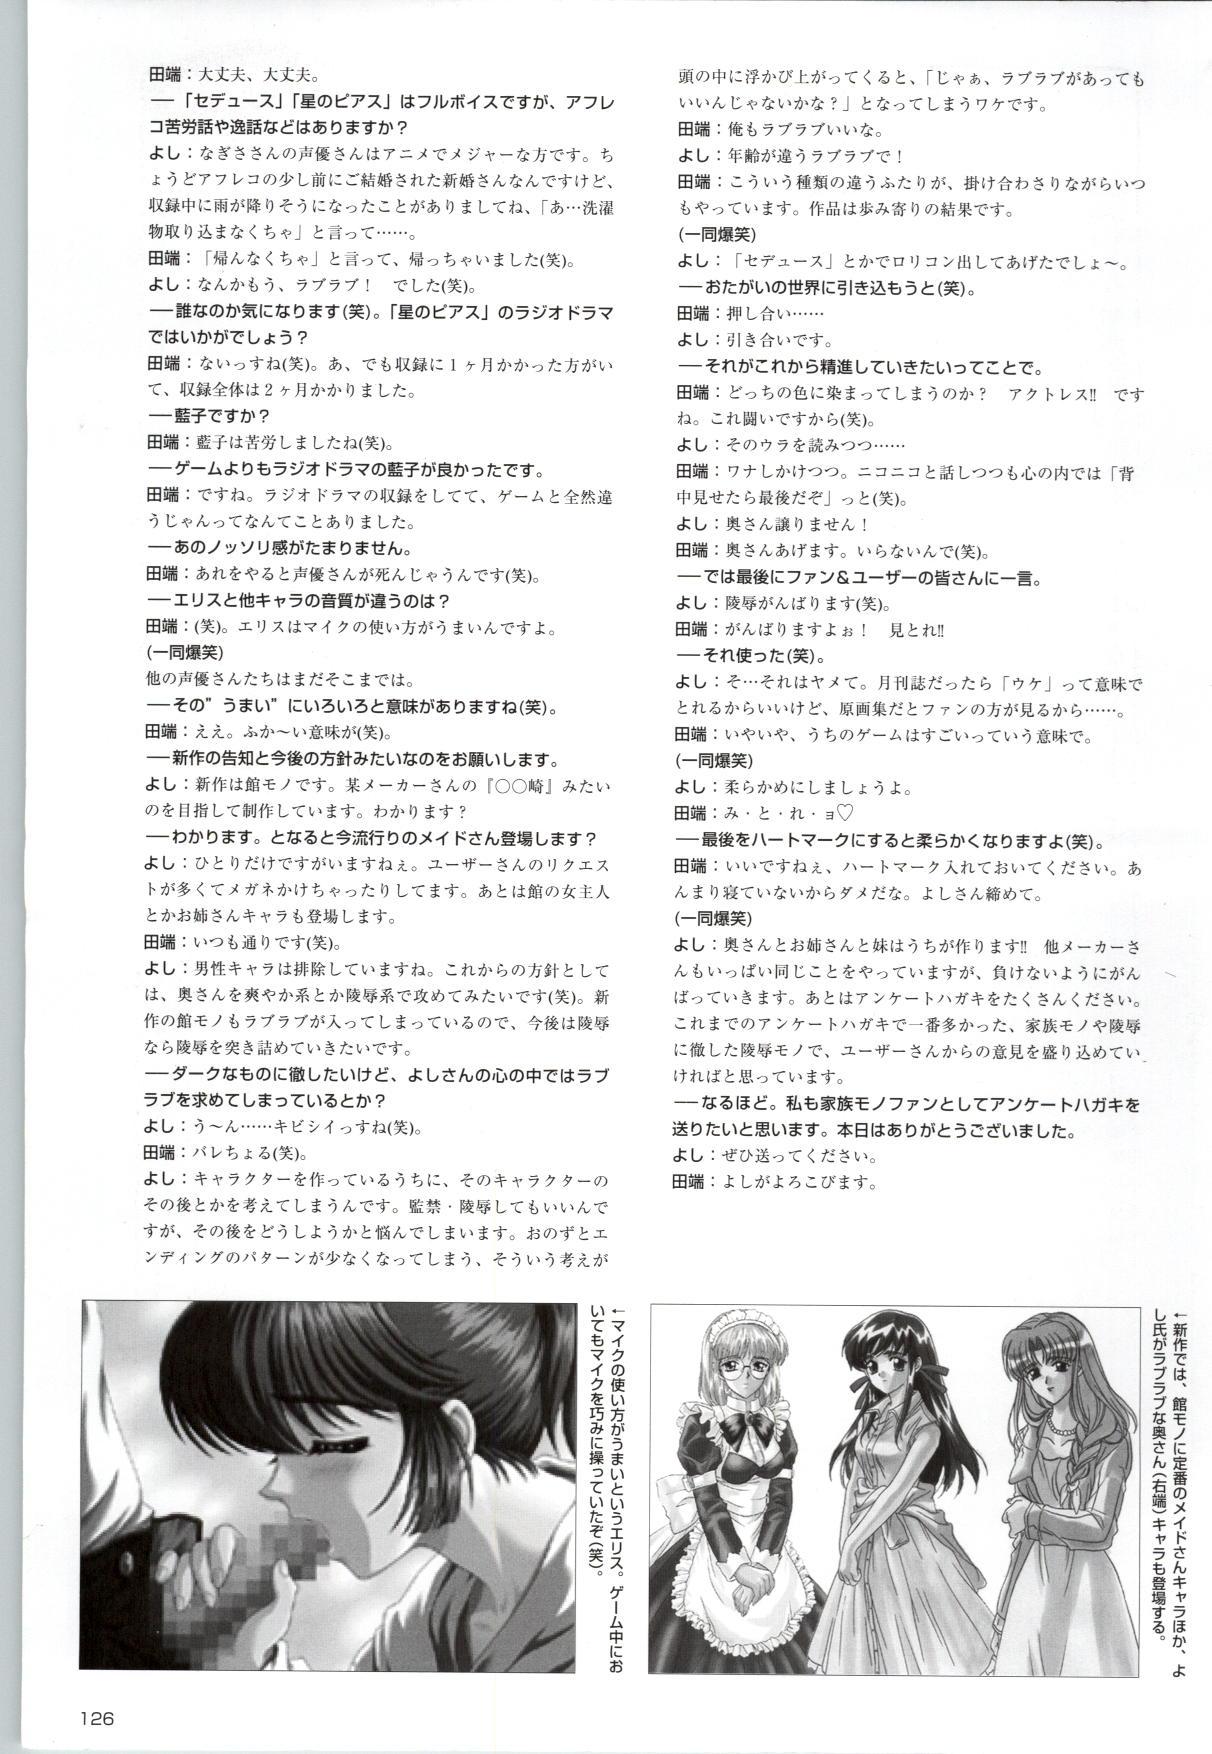 [Kinmedai Pink] ACTRESS Collection Kizuna + Seduce ~Yuuwaku~ + Hoshi no Pierce Computer Graphics & Original Pictures 126